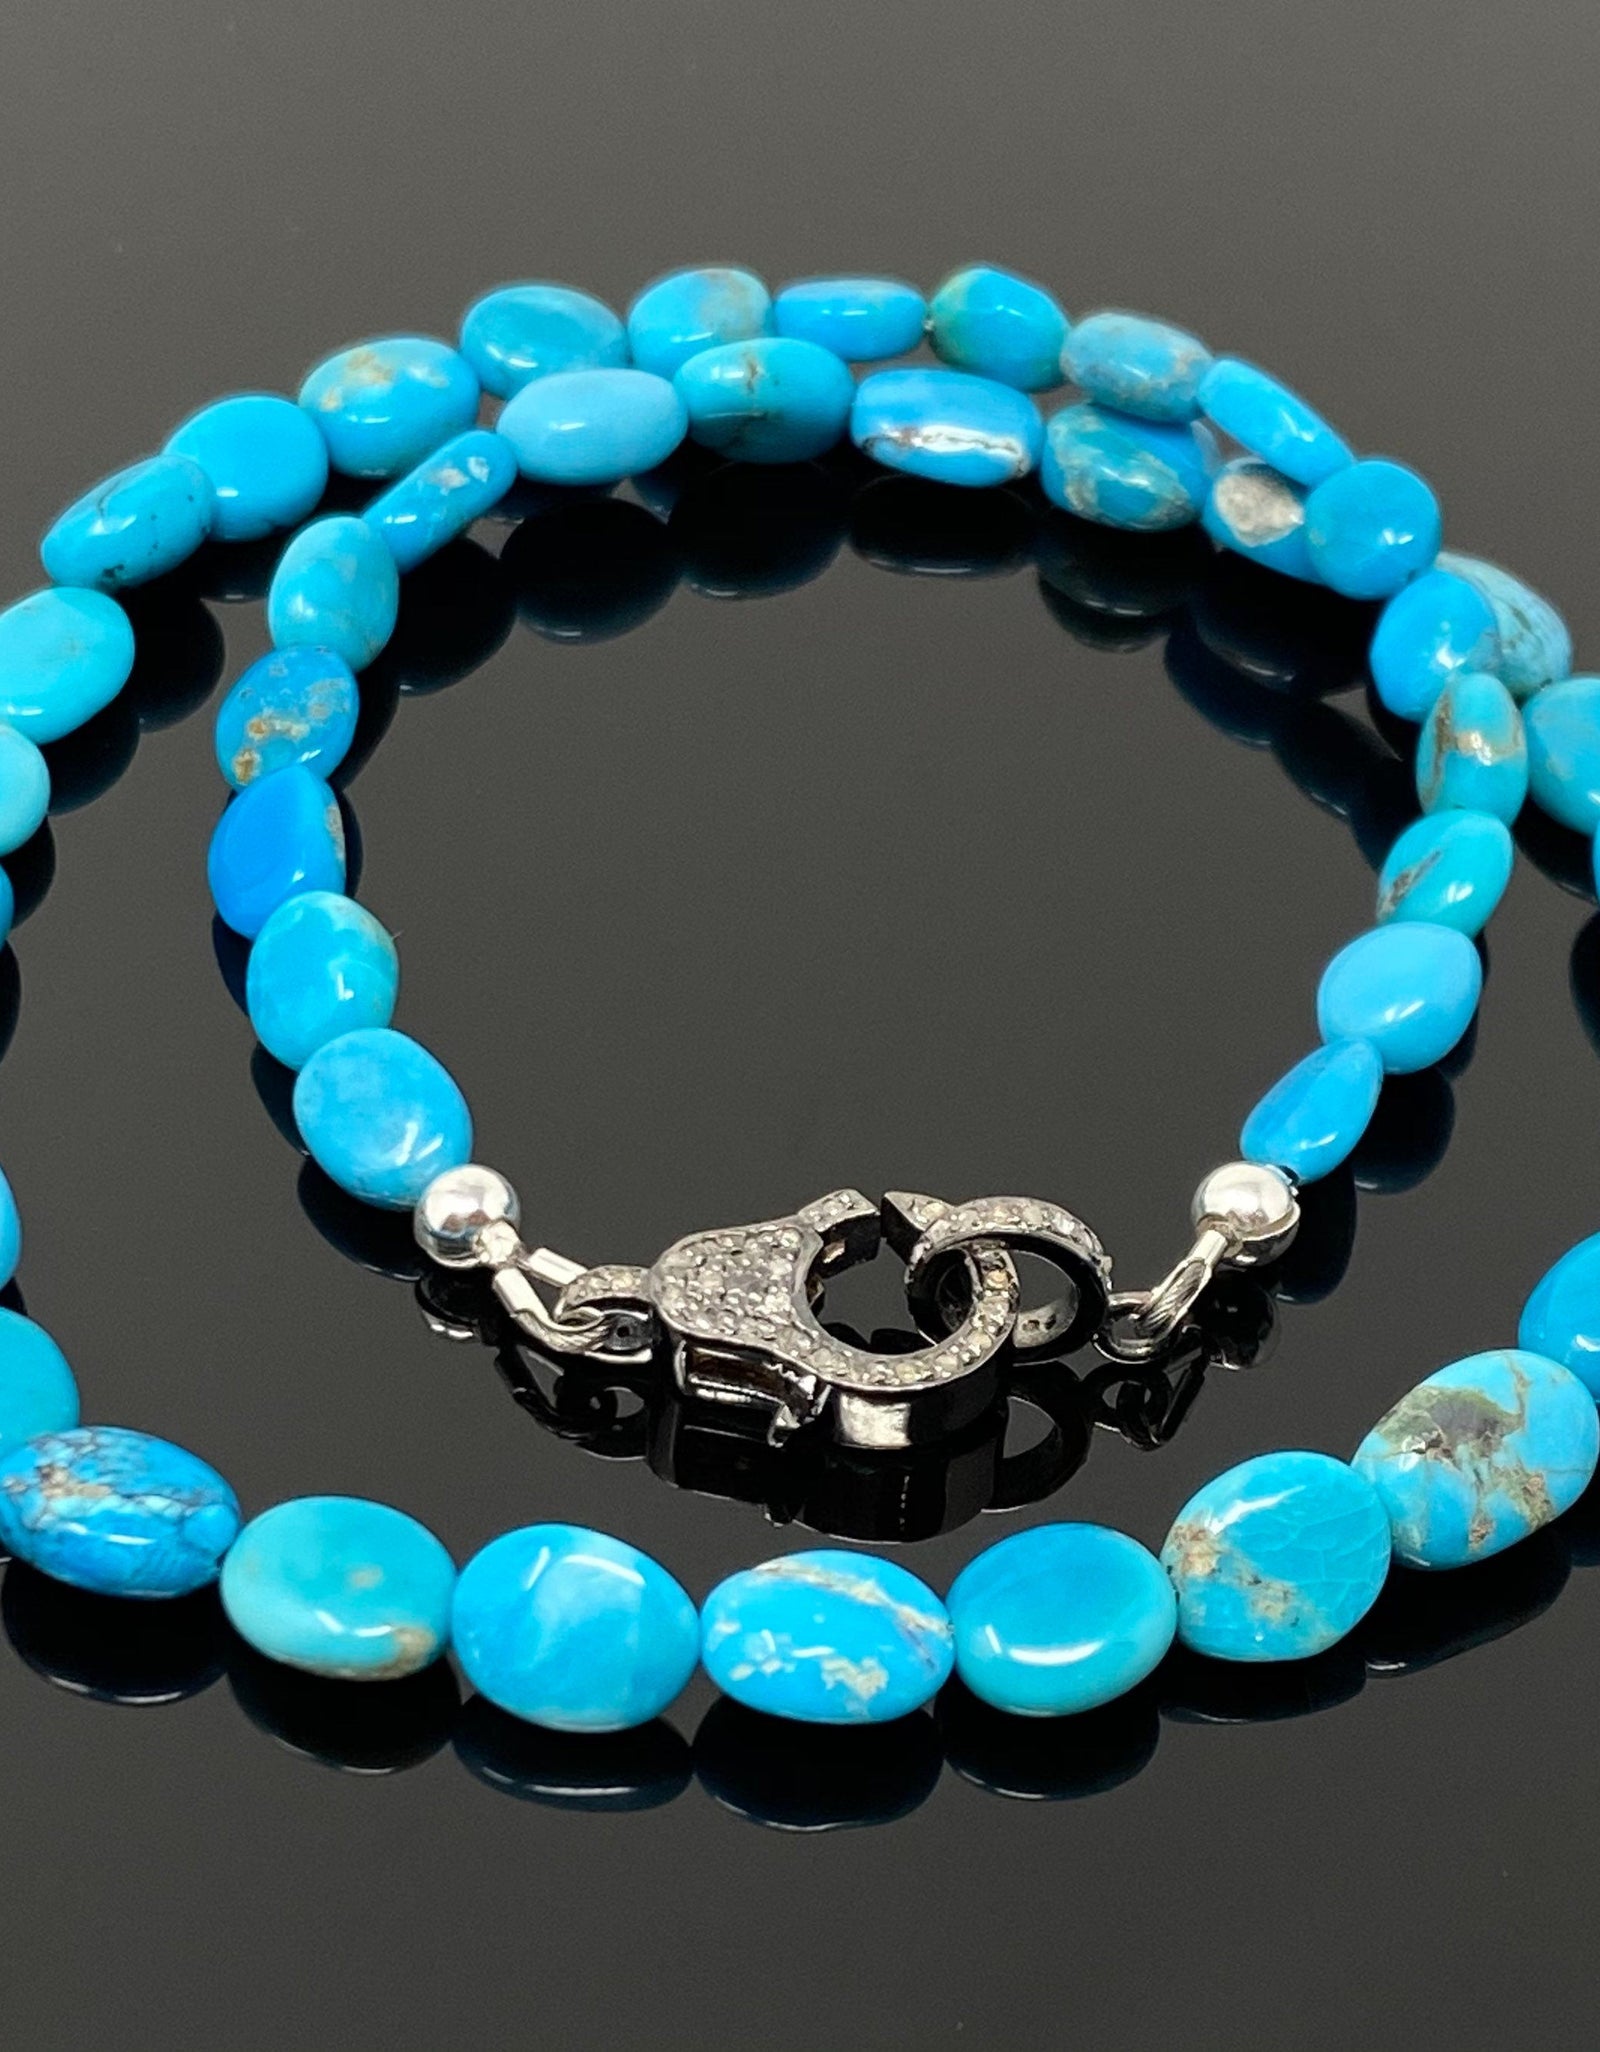 17” Genuine Arizona Turquoise Necklace with Pave Diamond Clasp,